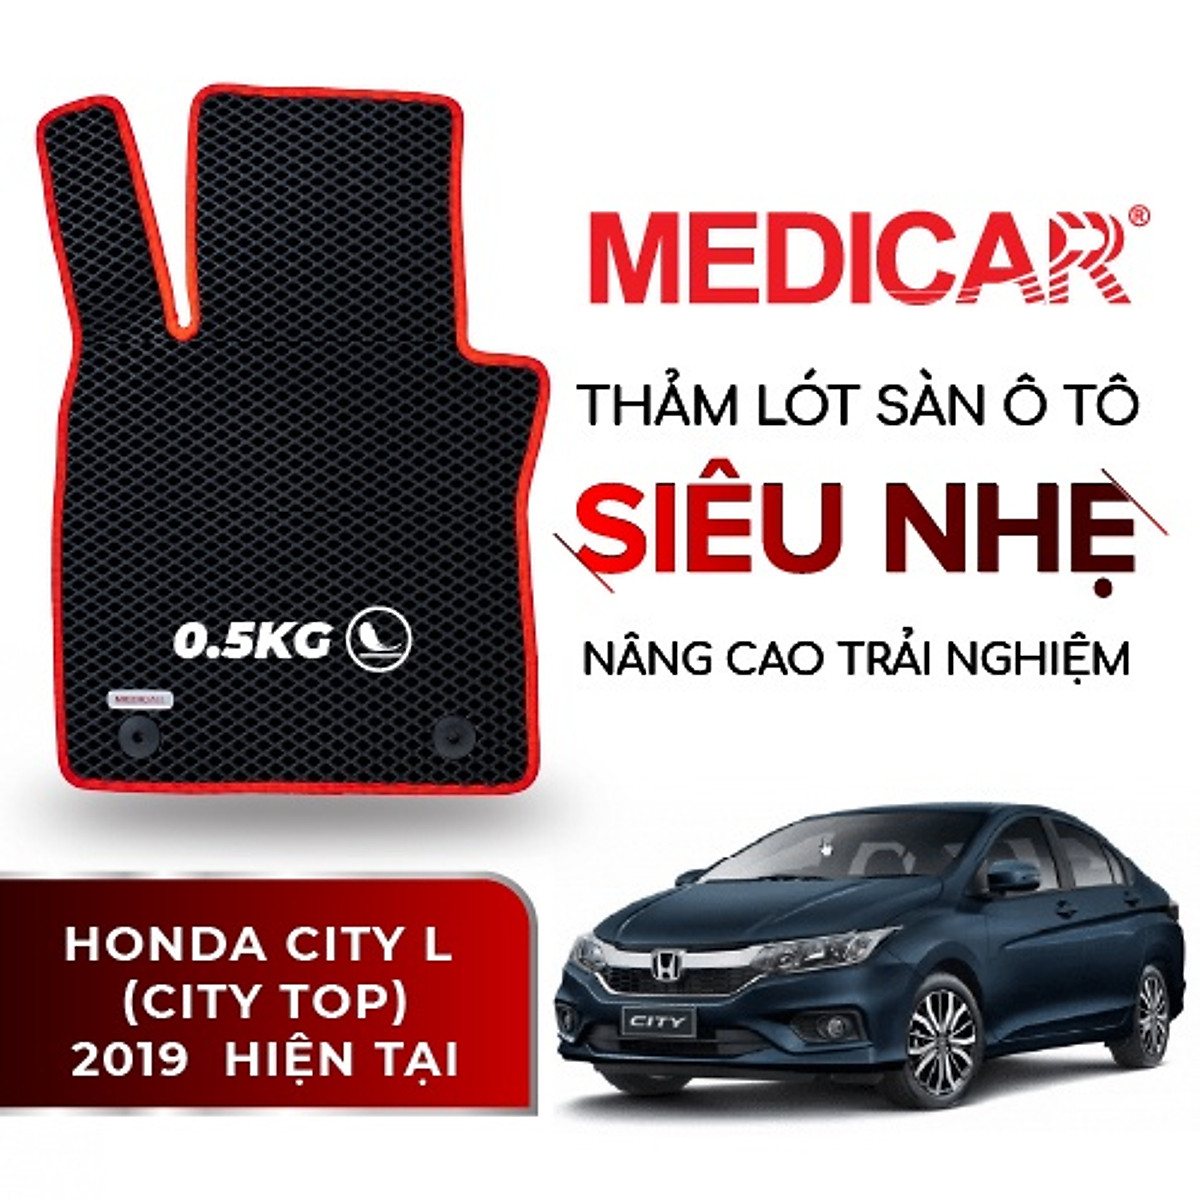 Honda City 15 TOP CVT 2019  2020  Giá khuyến mãi cực sốc sập sàn gọi  0973 172 368